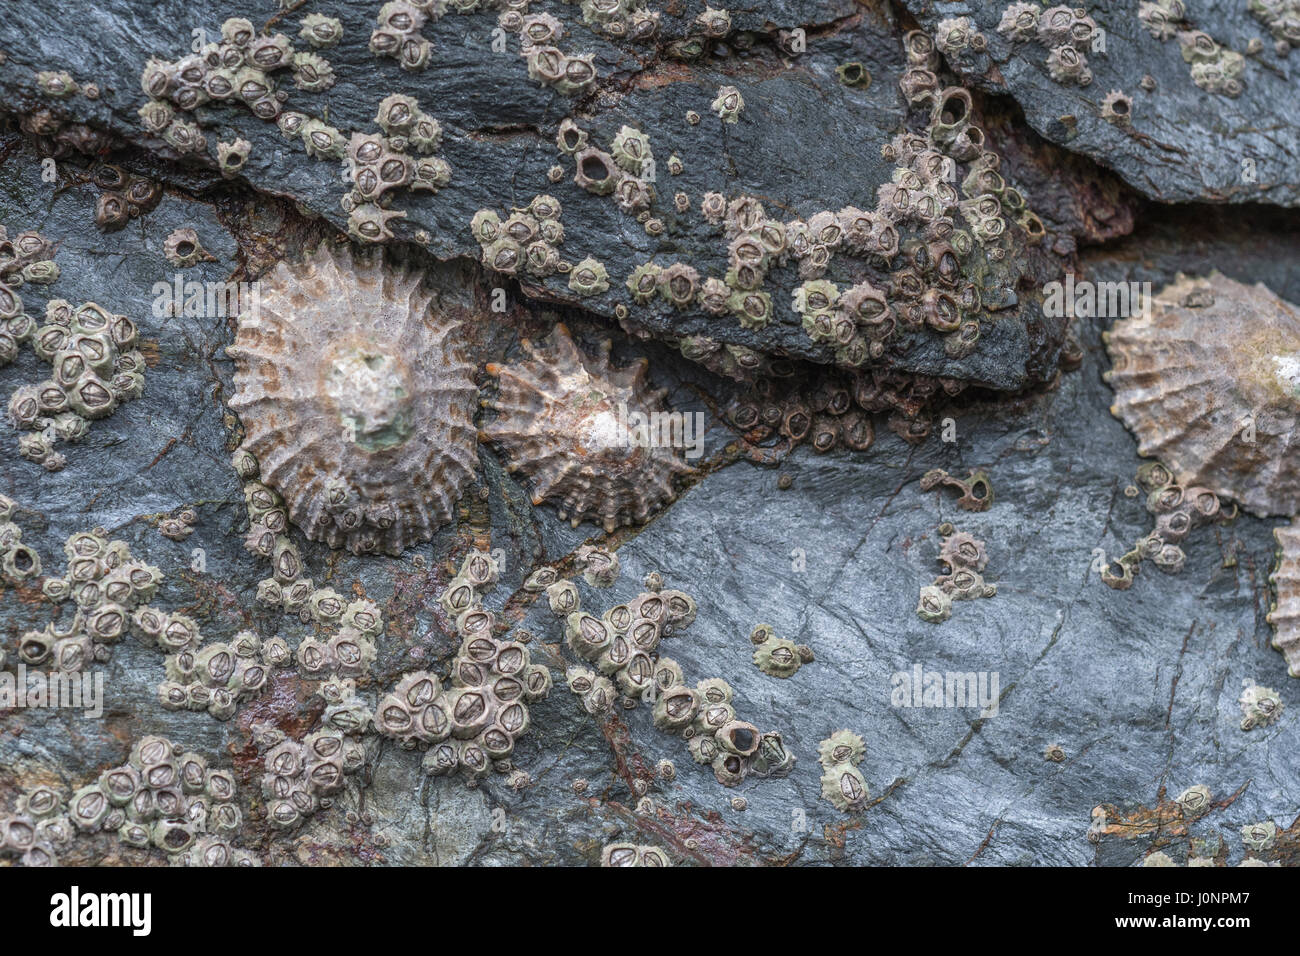 Conchas cónicas de Lapa común (Patella vulgata) - un marisco foragable encontrado alrededor de las costas del Reino Unido. Foto de stock